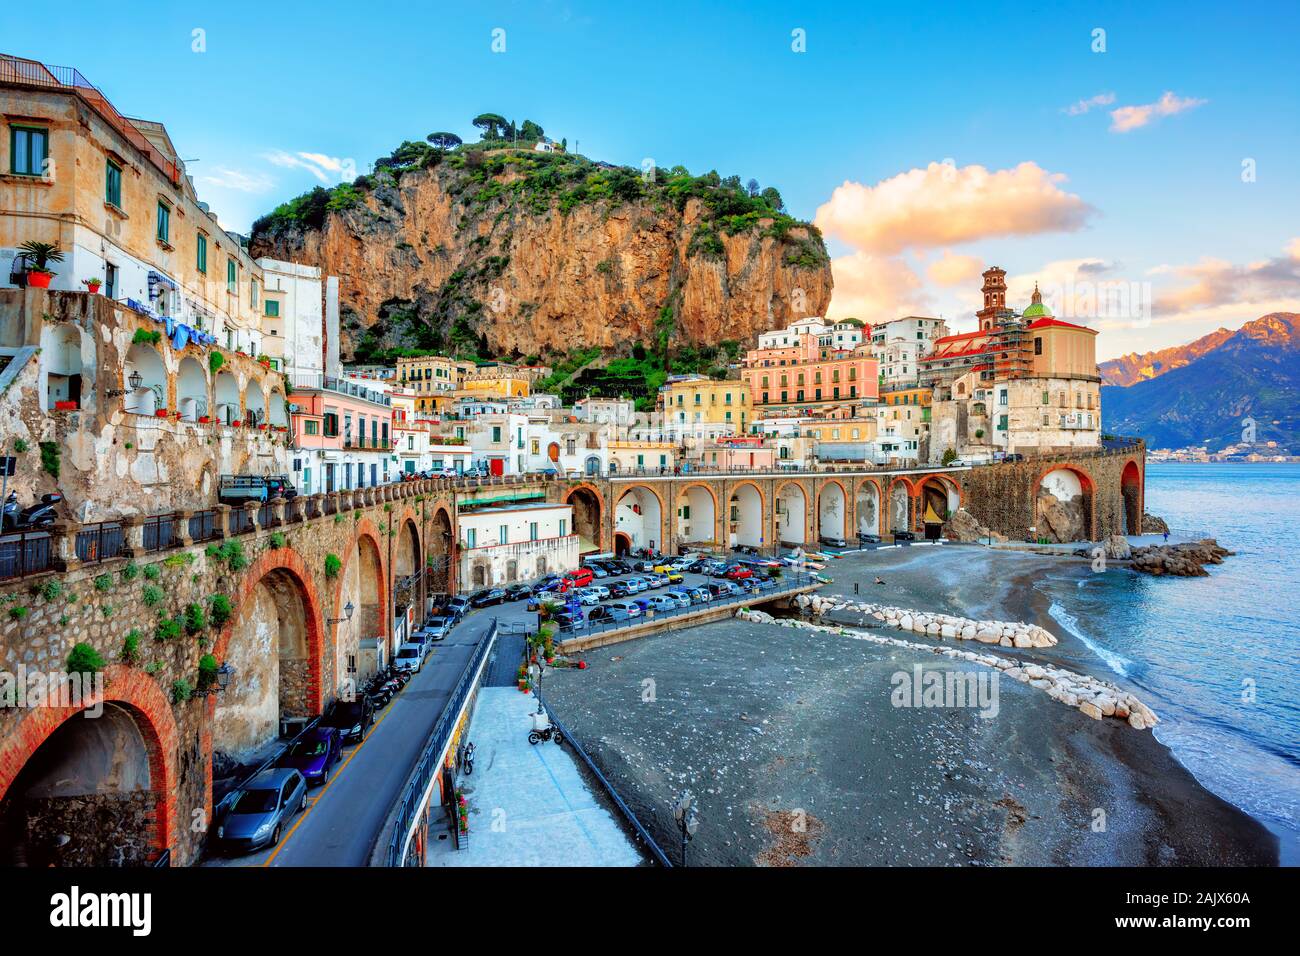 Atrani Old town and beach on Amalfi coast, Naples, Italy in sunset light Stock Photo